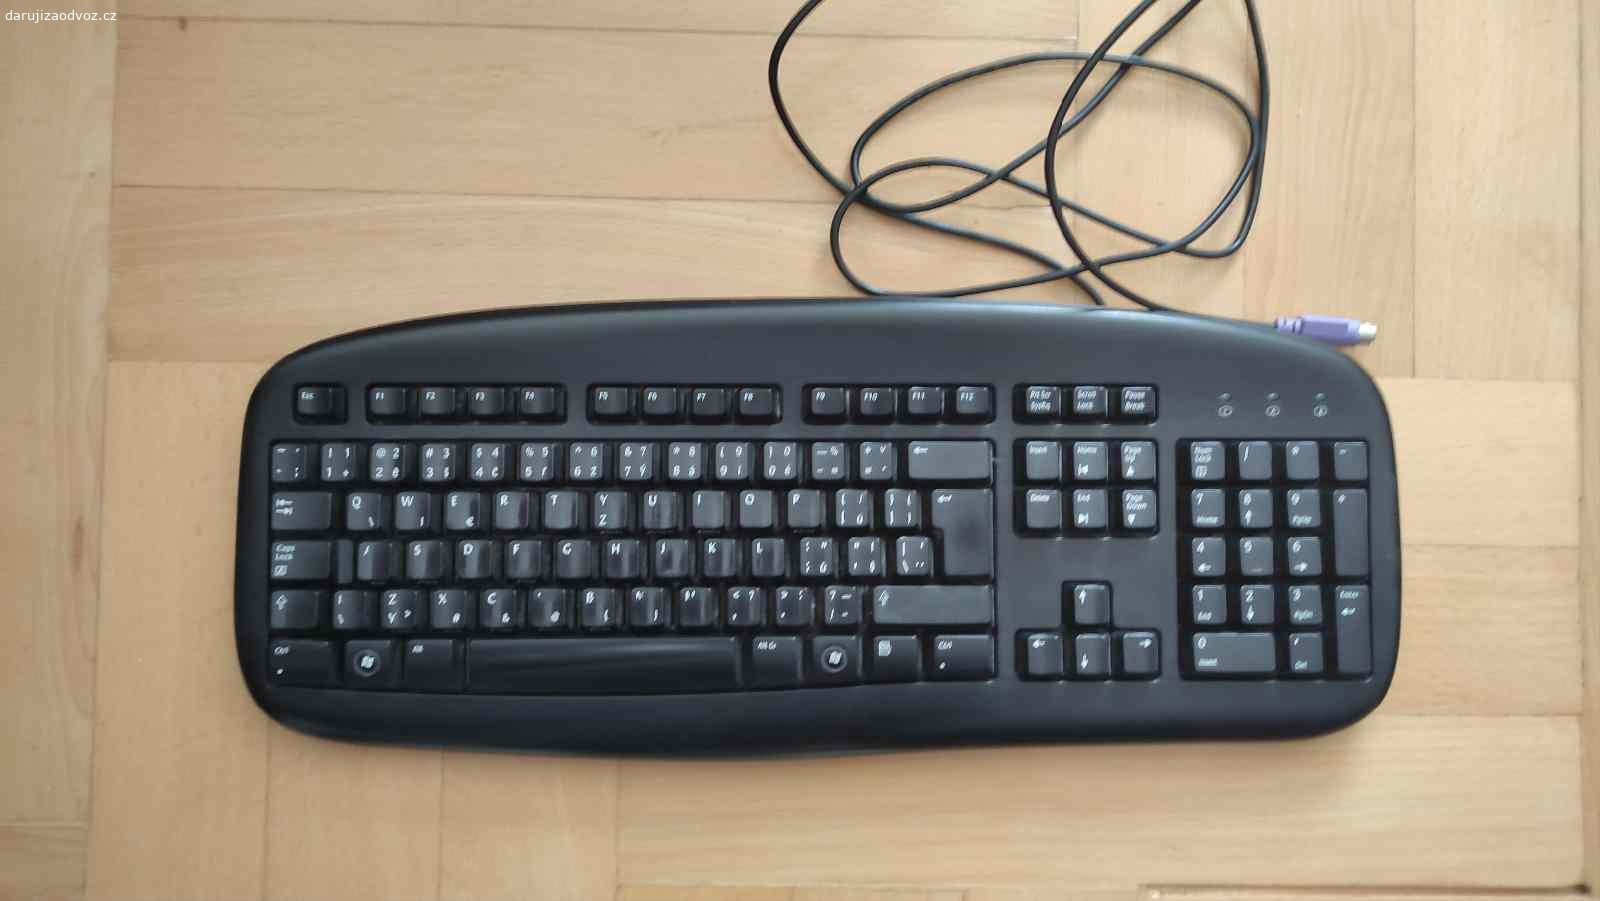 Logitech Deluxe Keyboard - kancelářská klávesnice. Port PS/2. Měla by být plně funkční. Stav viz foto.